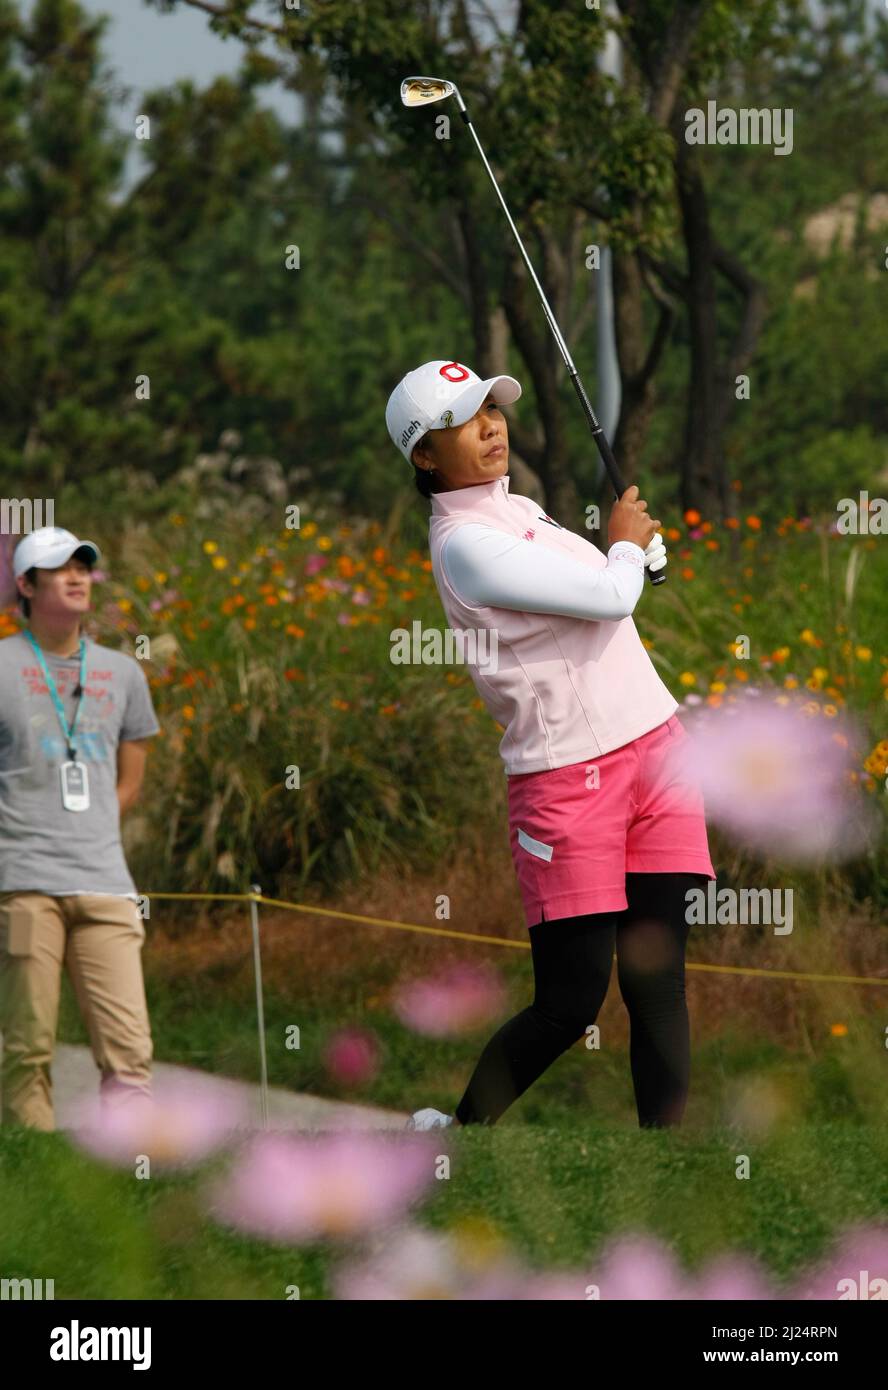 8 oct 2011-Incheon, Corée du Sud-KIM, Mihyun de Corée du Sud, joue shes tee shot sur le 3th trou pendant le championnat LPGA par Hana Bank au club de golf SKY72 à Incheon le 8 oct 2011, Corée du Sud. Banque D'Images